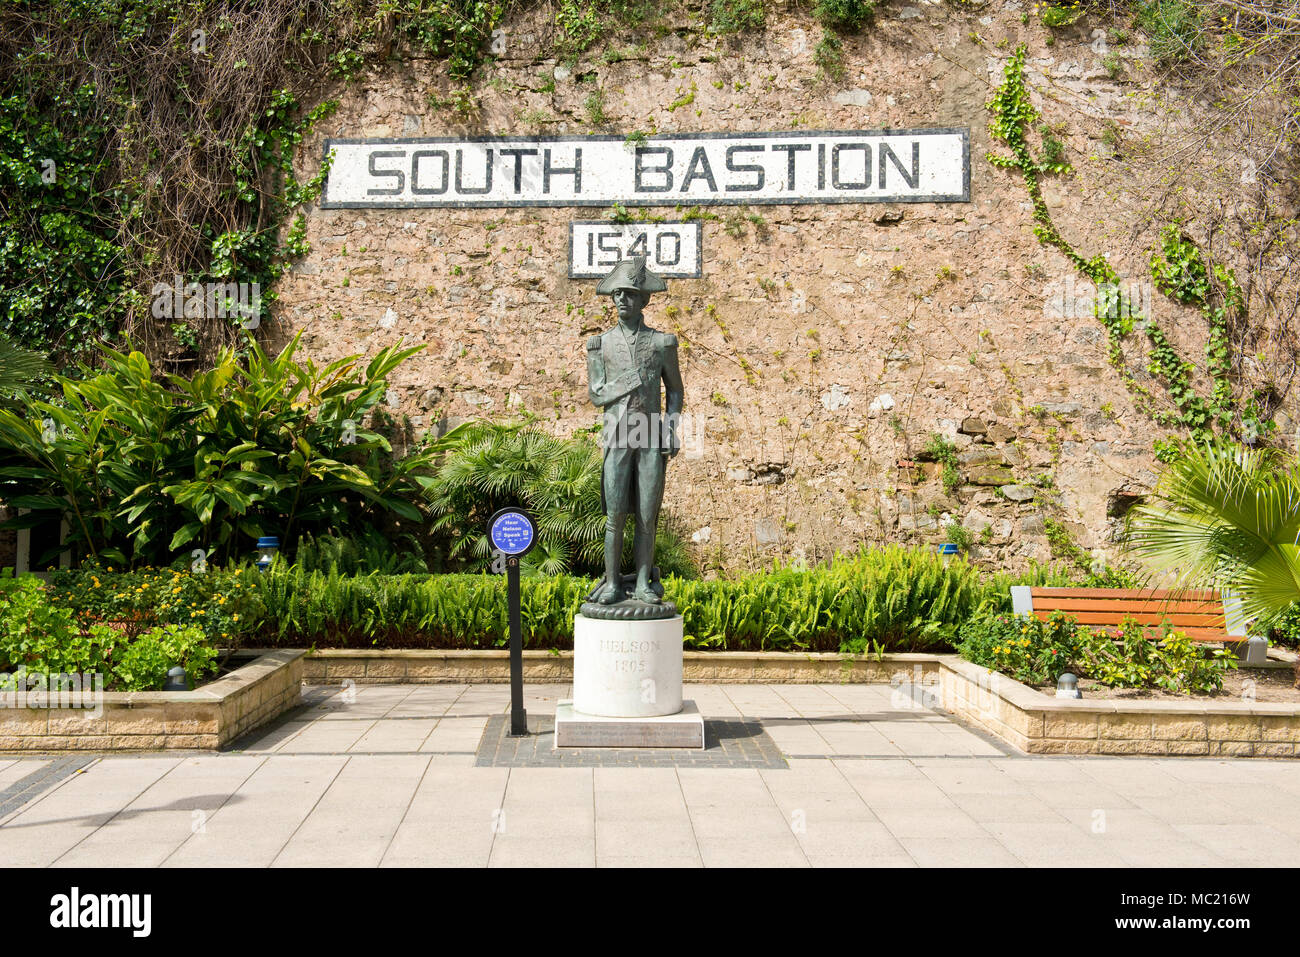 Estatua de Lord Nelson junto al signo de bastión del Sur, 1540. Gibraltar, Reino Unido. Península Ibérica. Foto de stock